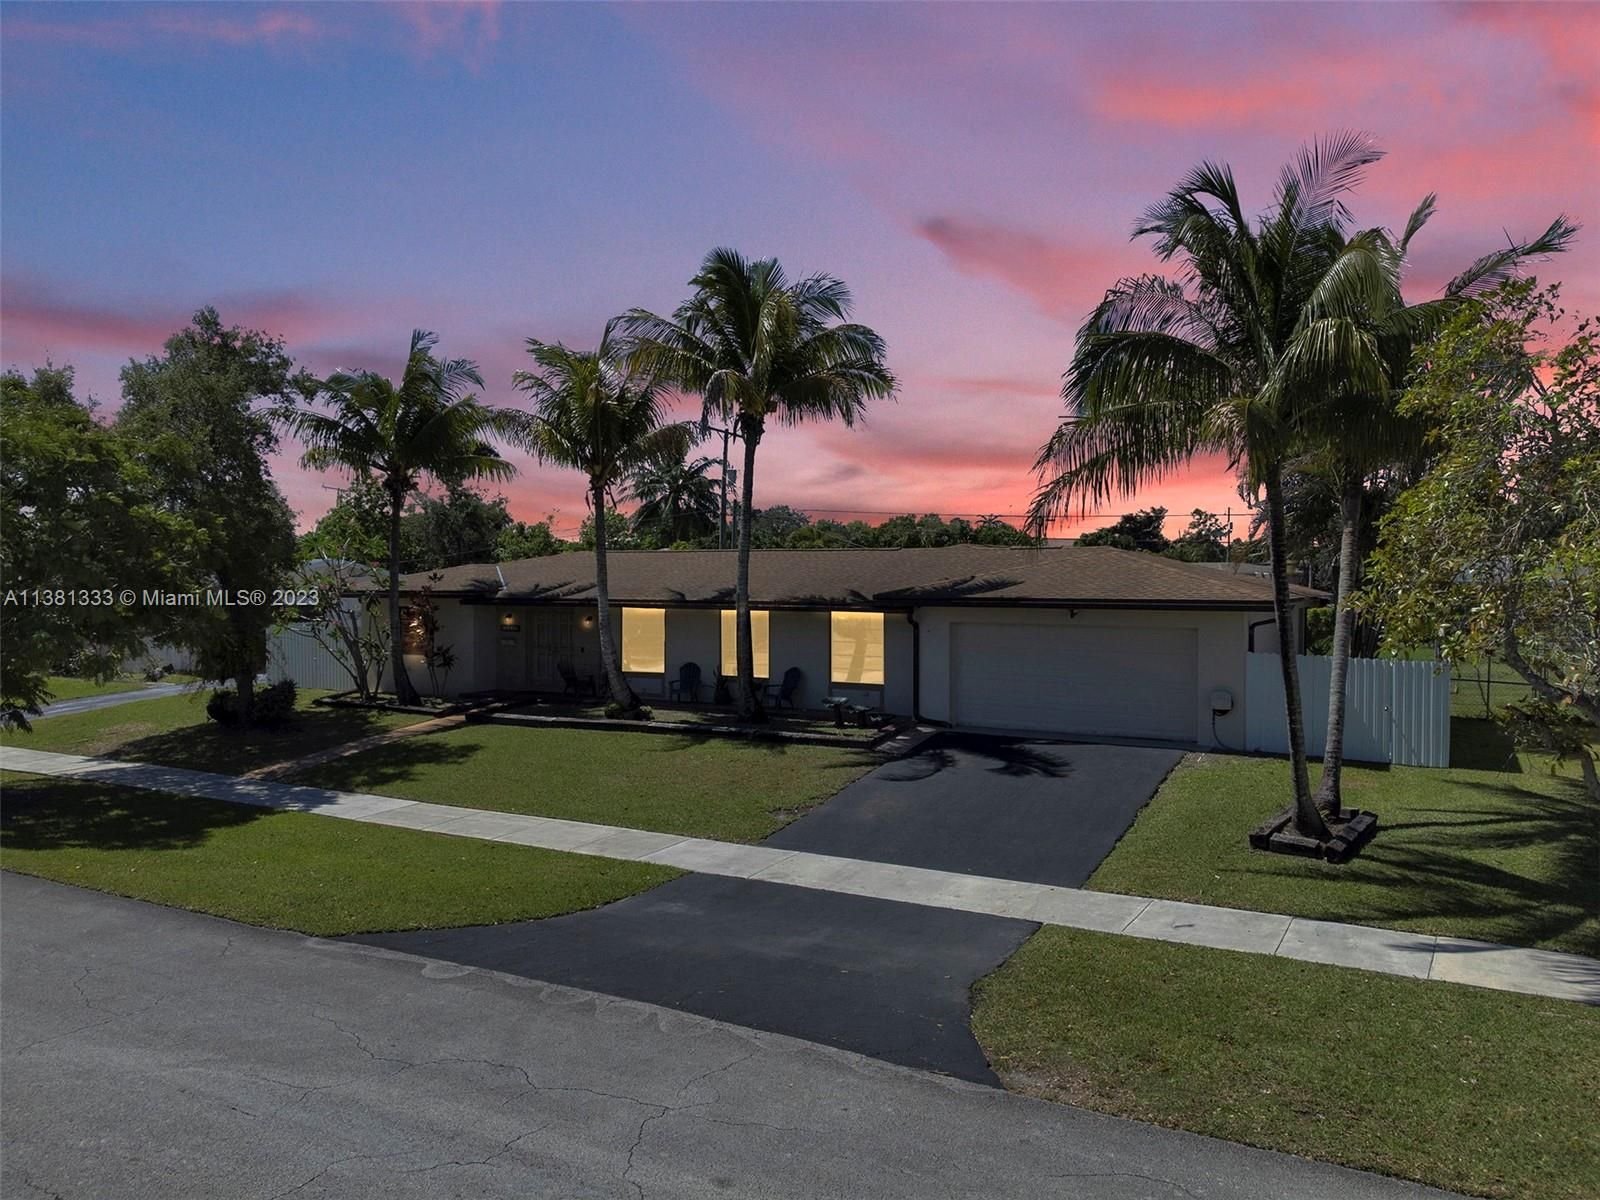 Real estate property located at 15640 Palmetto Club Dr, Miami-Dade County, Miami, FL